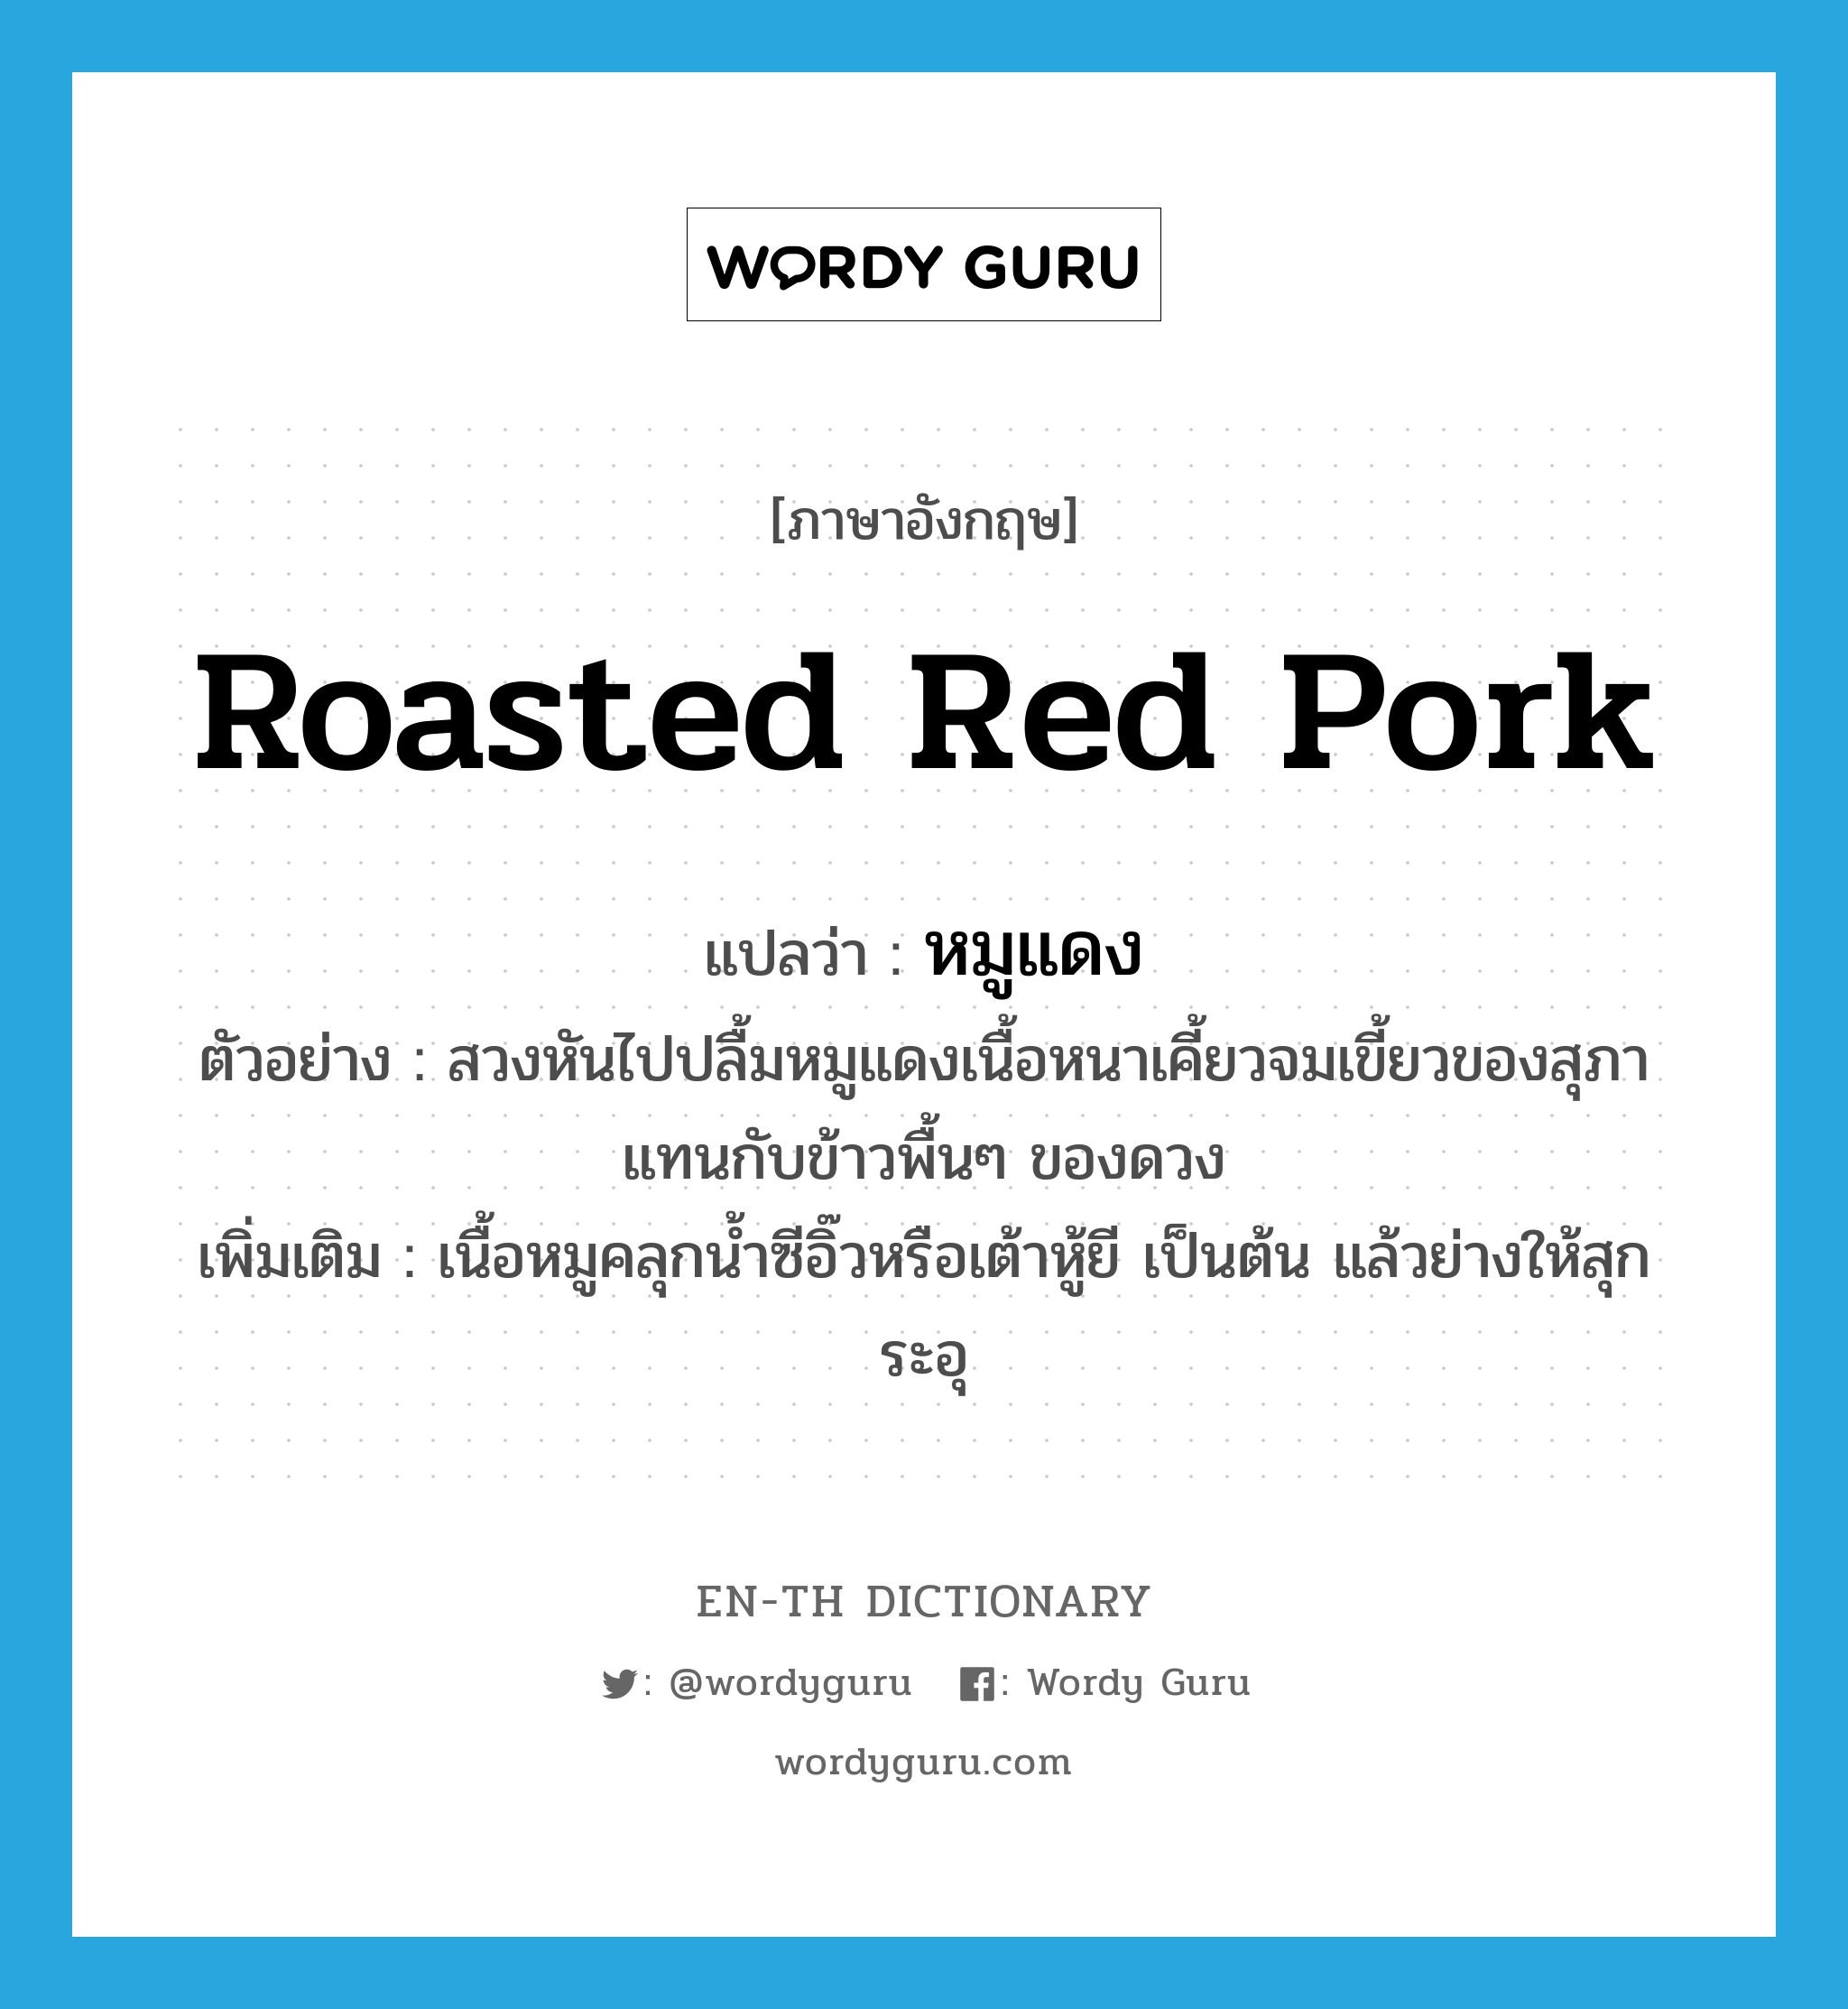 หมูแดง ภาษาอังกฤษ?, คำศัพท์ภาษาอังกฤษ หมูแดง แปลว่า roasted red pork ประเภท N ตัวอย่าง สวงหันไปปลื้มหมูแดงเนื้อหนาเคี้ยวจมเขี้ยวของสุภาแทนกับข้าวพื้นๆ ของดวง เพิ่มเติม เนื้อหมูคลุกน้ำซีอิ๊วหรือเต้าหู้ยี เป็นต้น แล้วย่างให้สุก ระอุ หมวด N